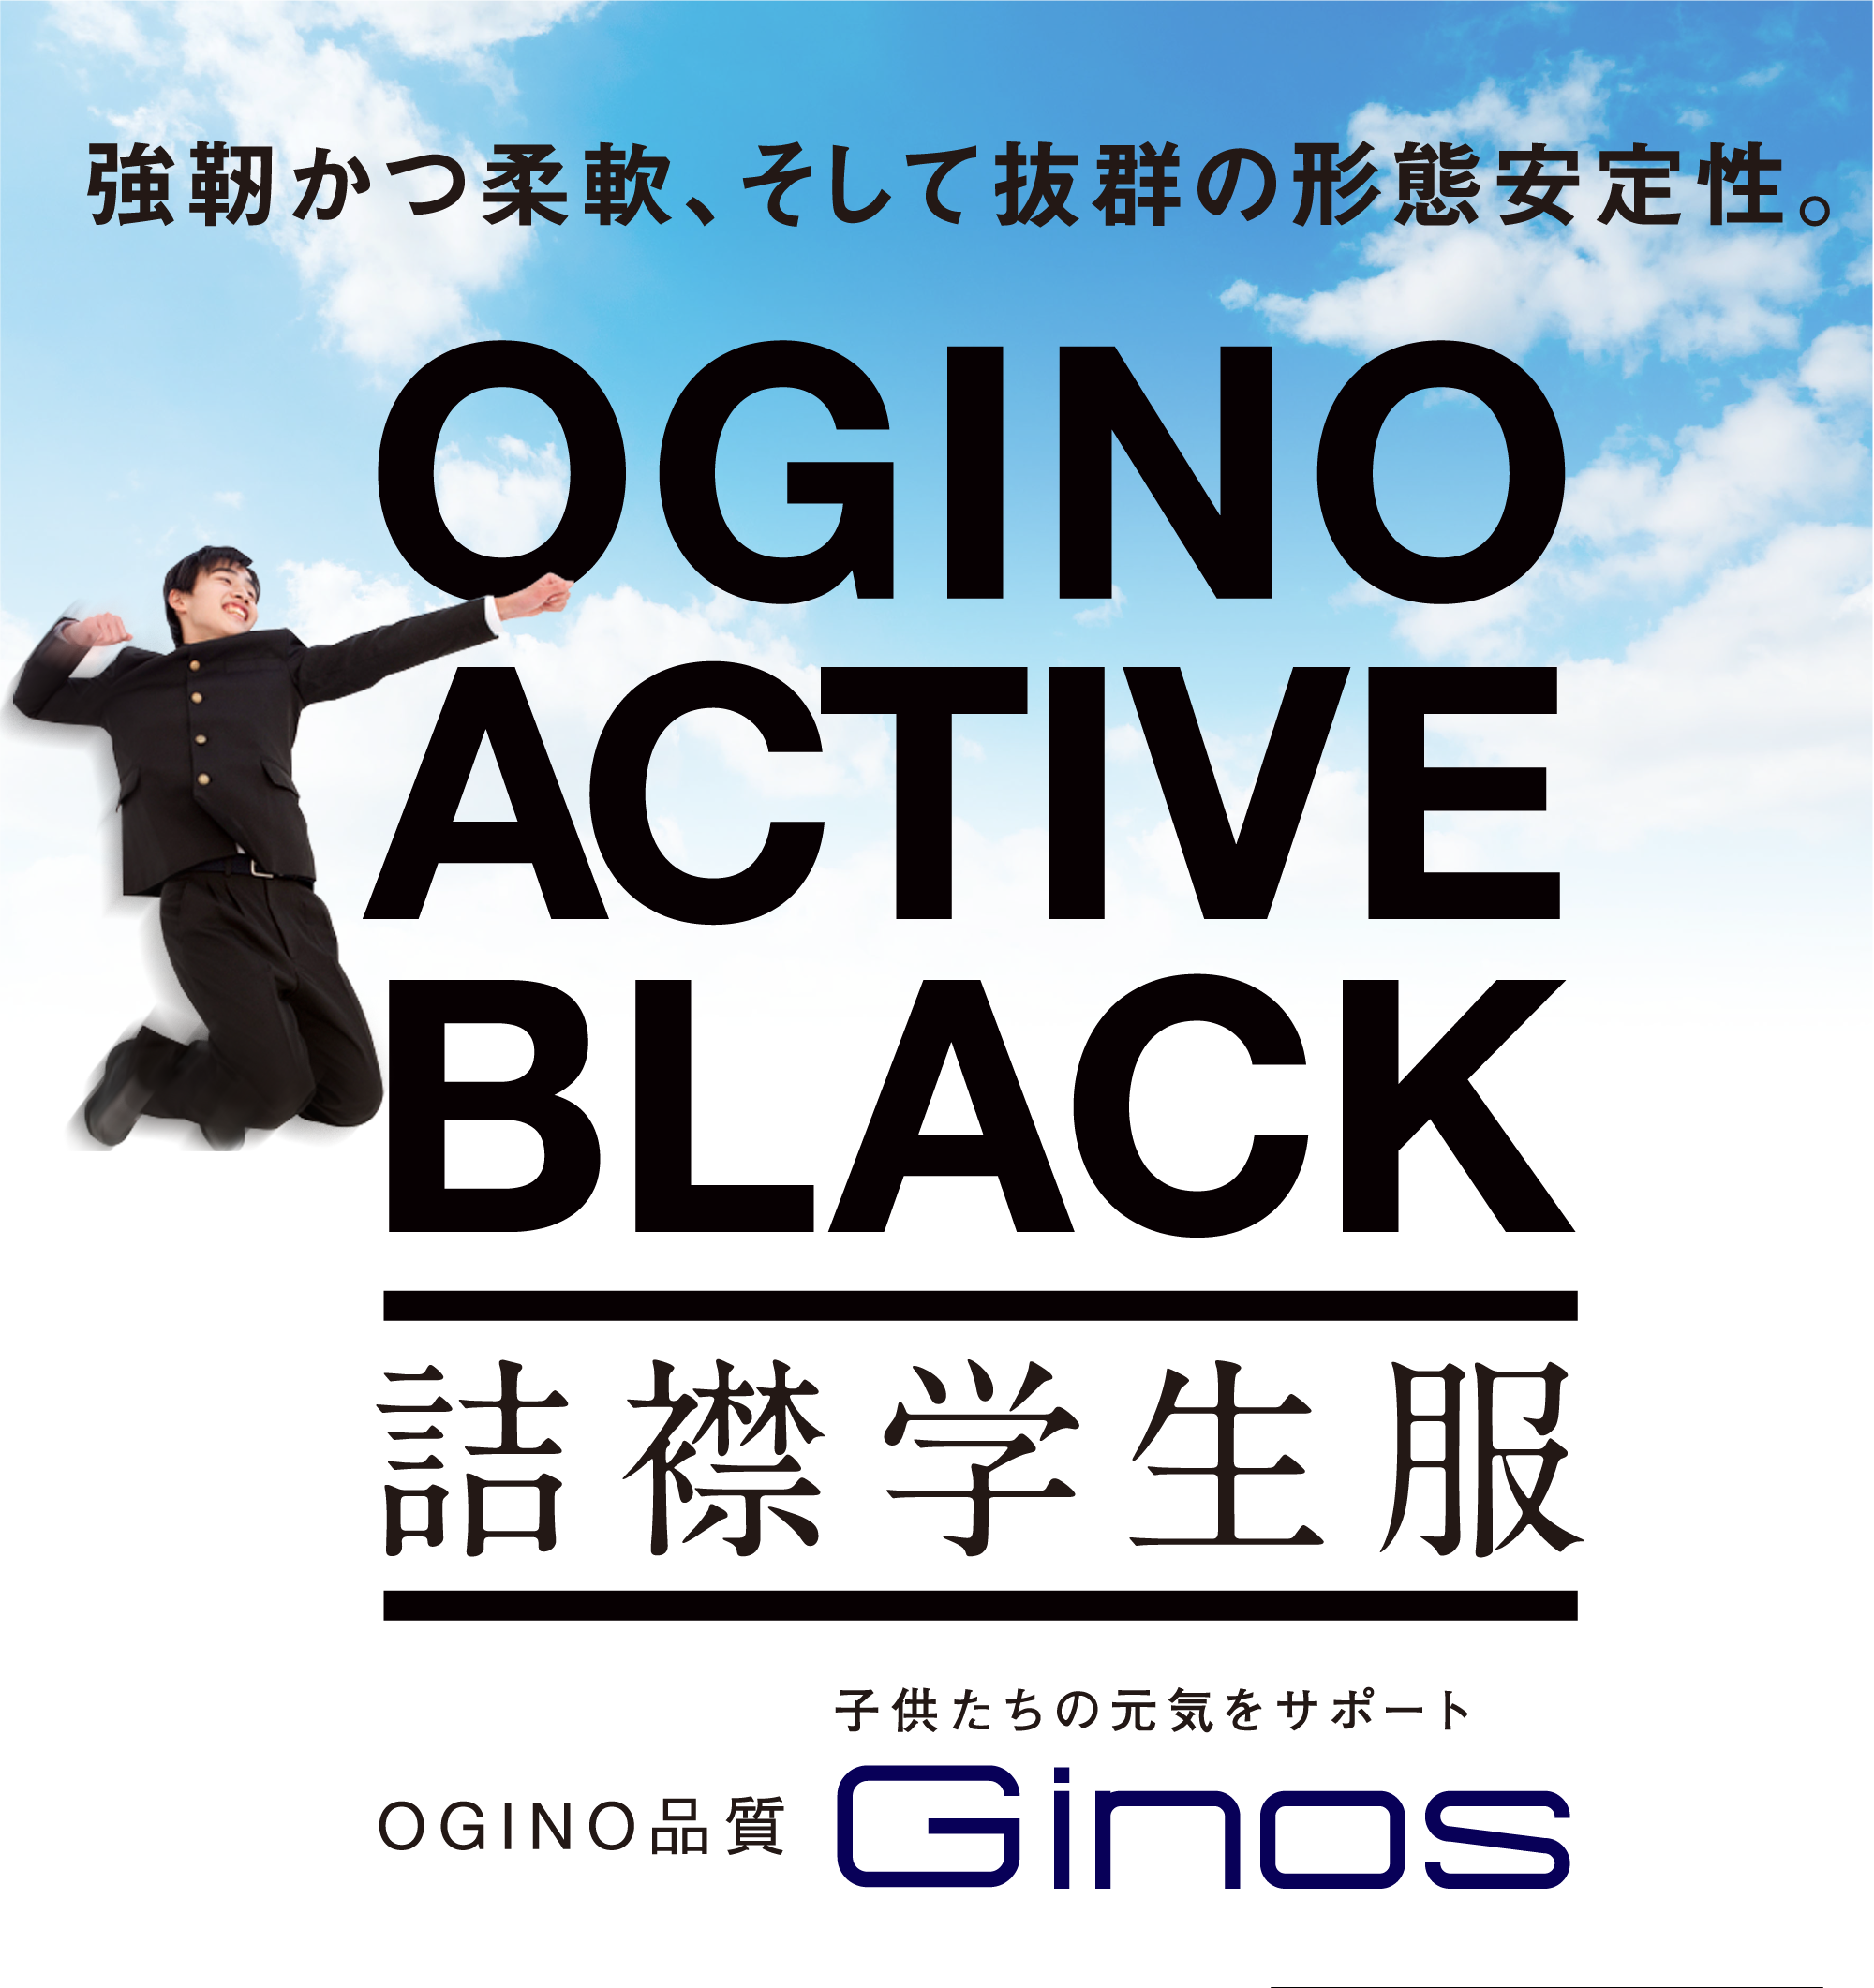 強靭かつ柔軟、そして抜群の形態安定性。OGINO ACTIVE BLACK。詰襟学生服。OGINO品質 Ginos。